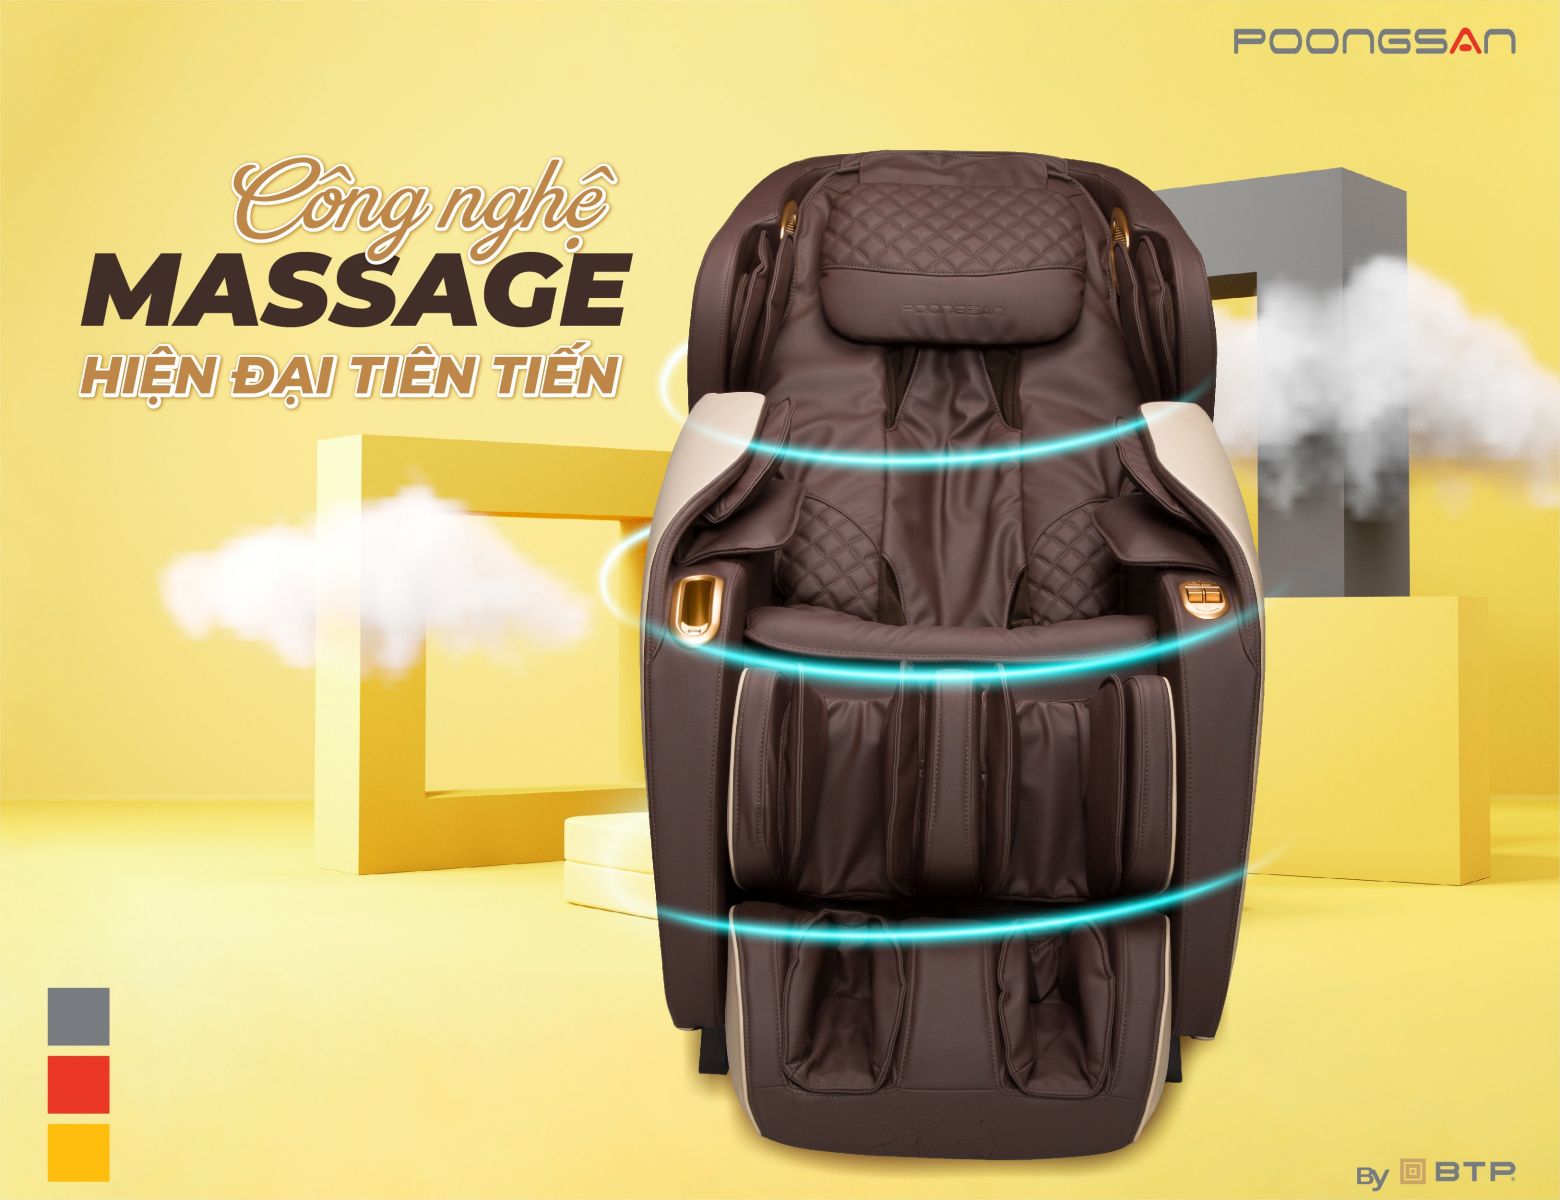 Tác dụng của ghế massage trị liệu hiện đại, tiên tiến